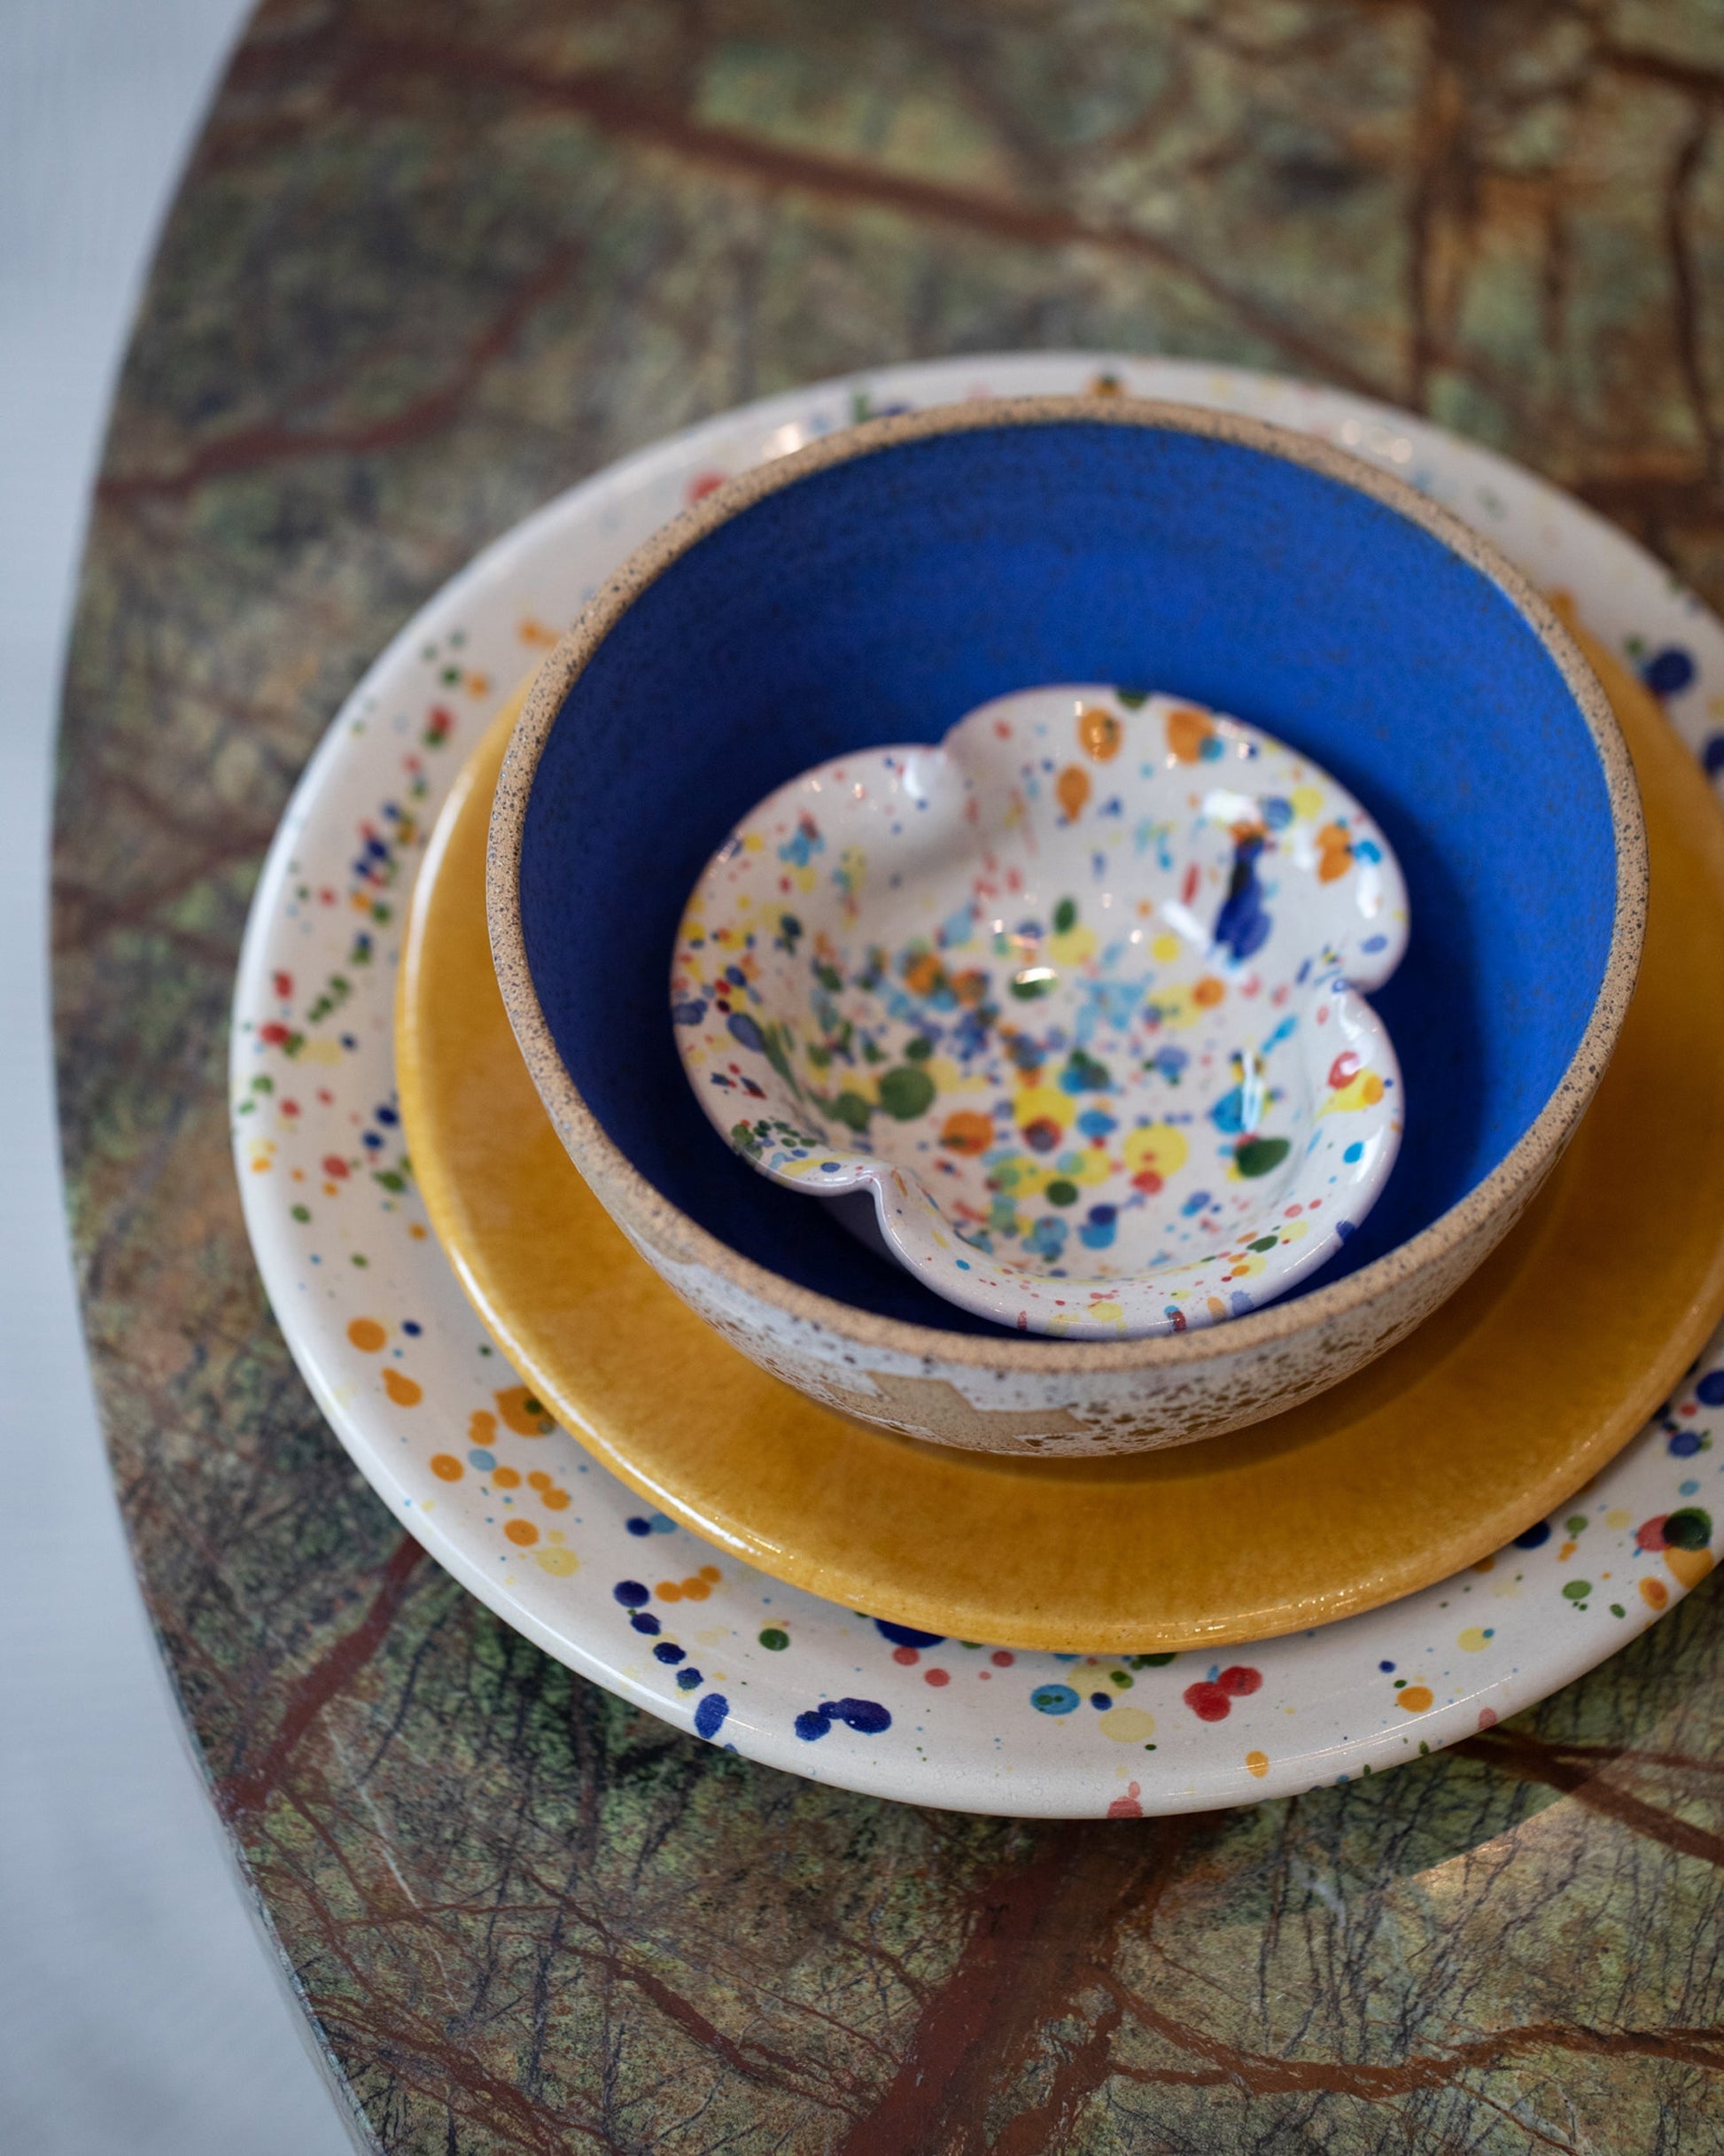 Styled image featuring the La Ceramica Vincenzo Del Monaco Small Scalloped Dish.